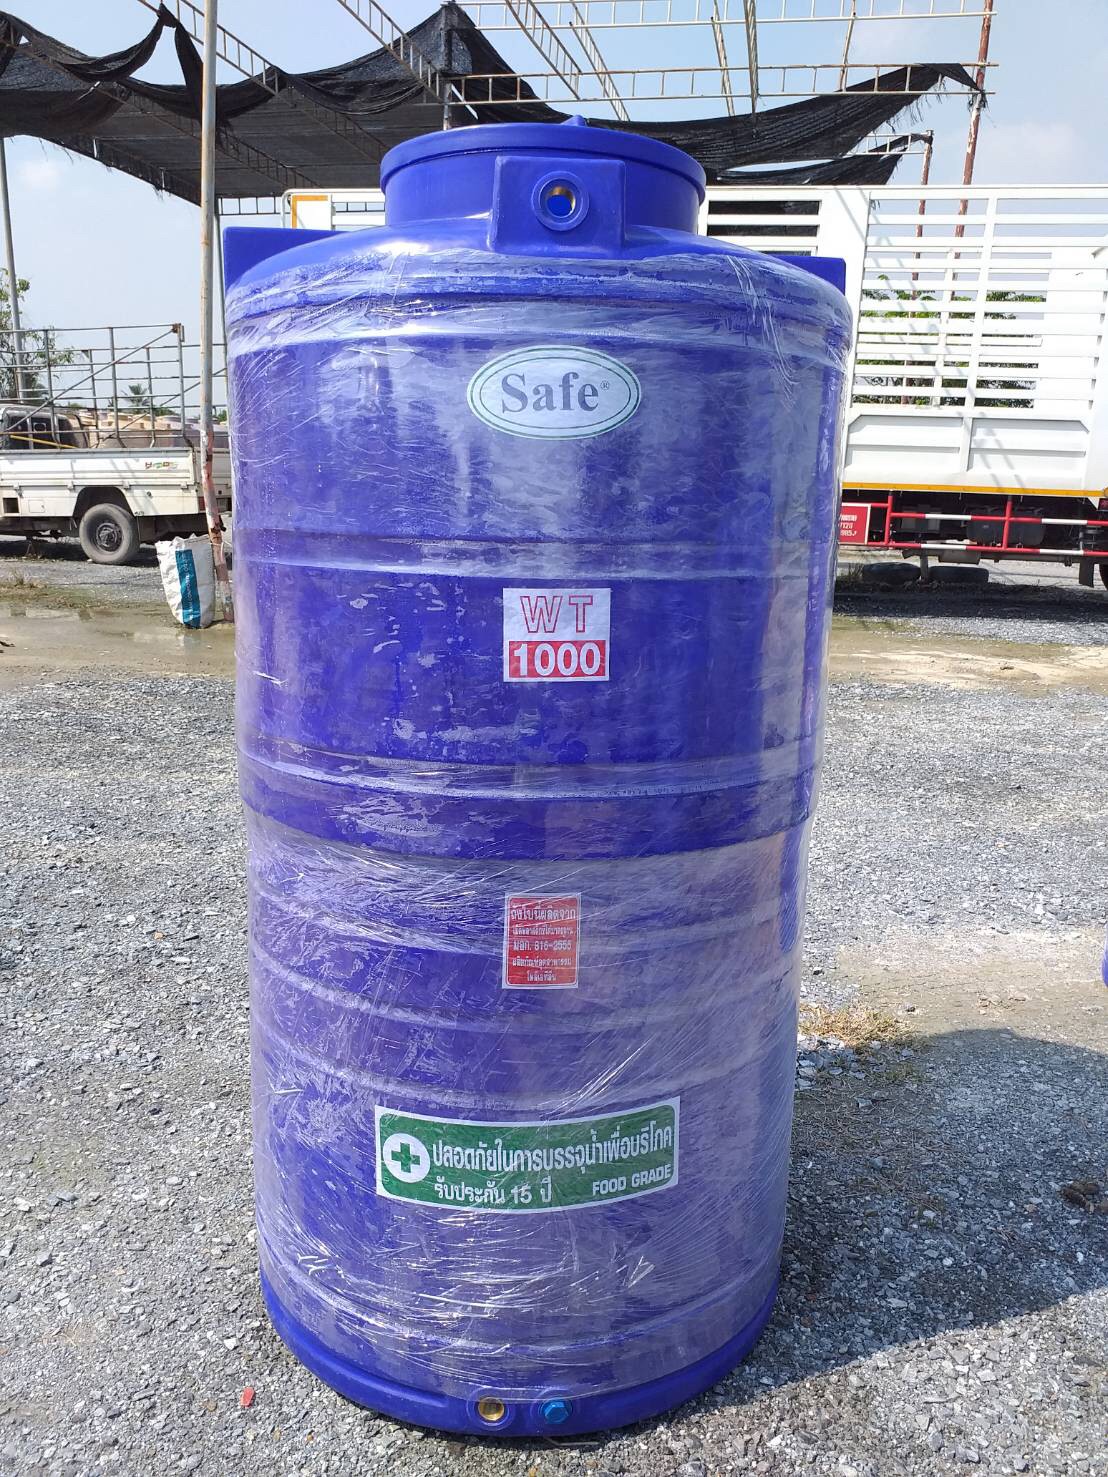 ถังเก็บน้ำ 1000 ลิตร ถังเก็บน้ำบนดิน ยี่ห้อ Safe แท้งค์น้ำ ส่งฟรีกรุงเทพและปริมณฑล ต่างจังหวัดมีค่าขนส่ง มาตรฐาน มอก.816-2556 Food Grade